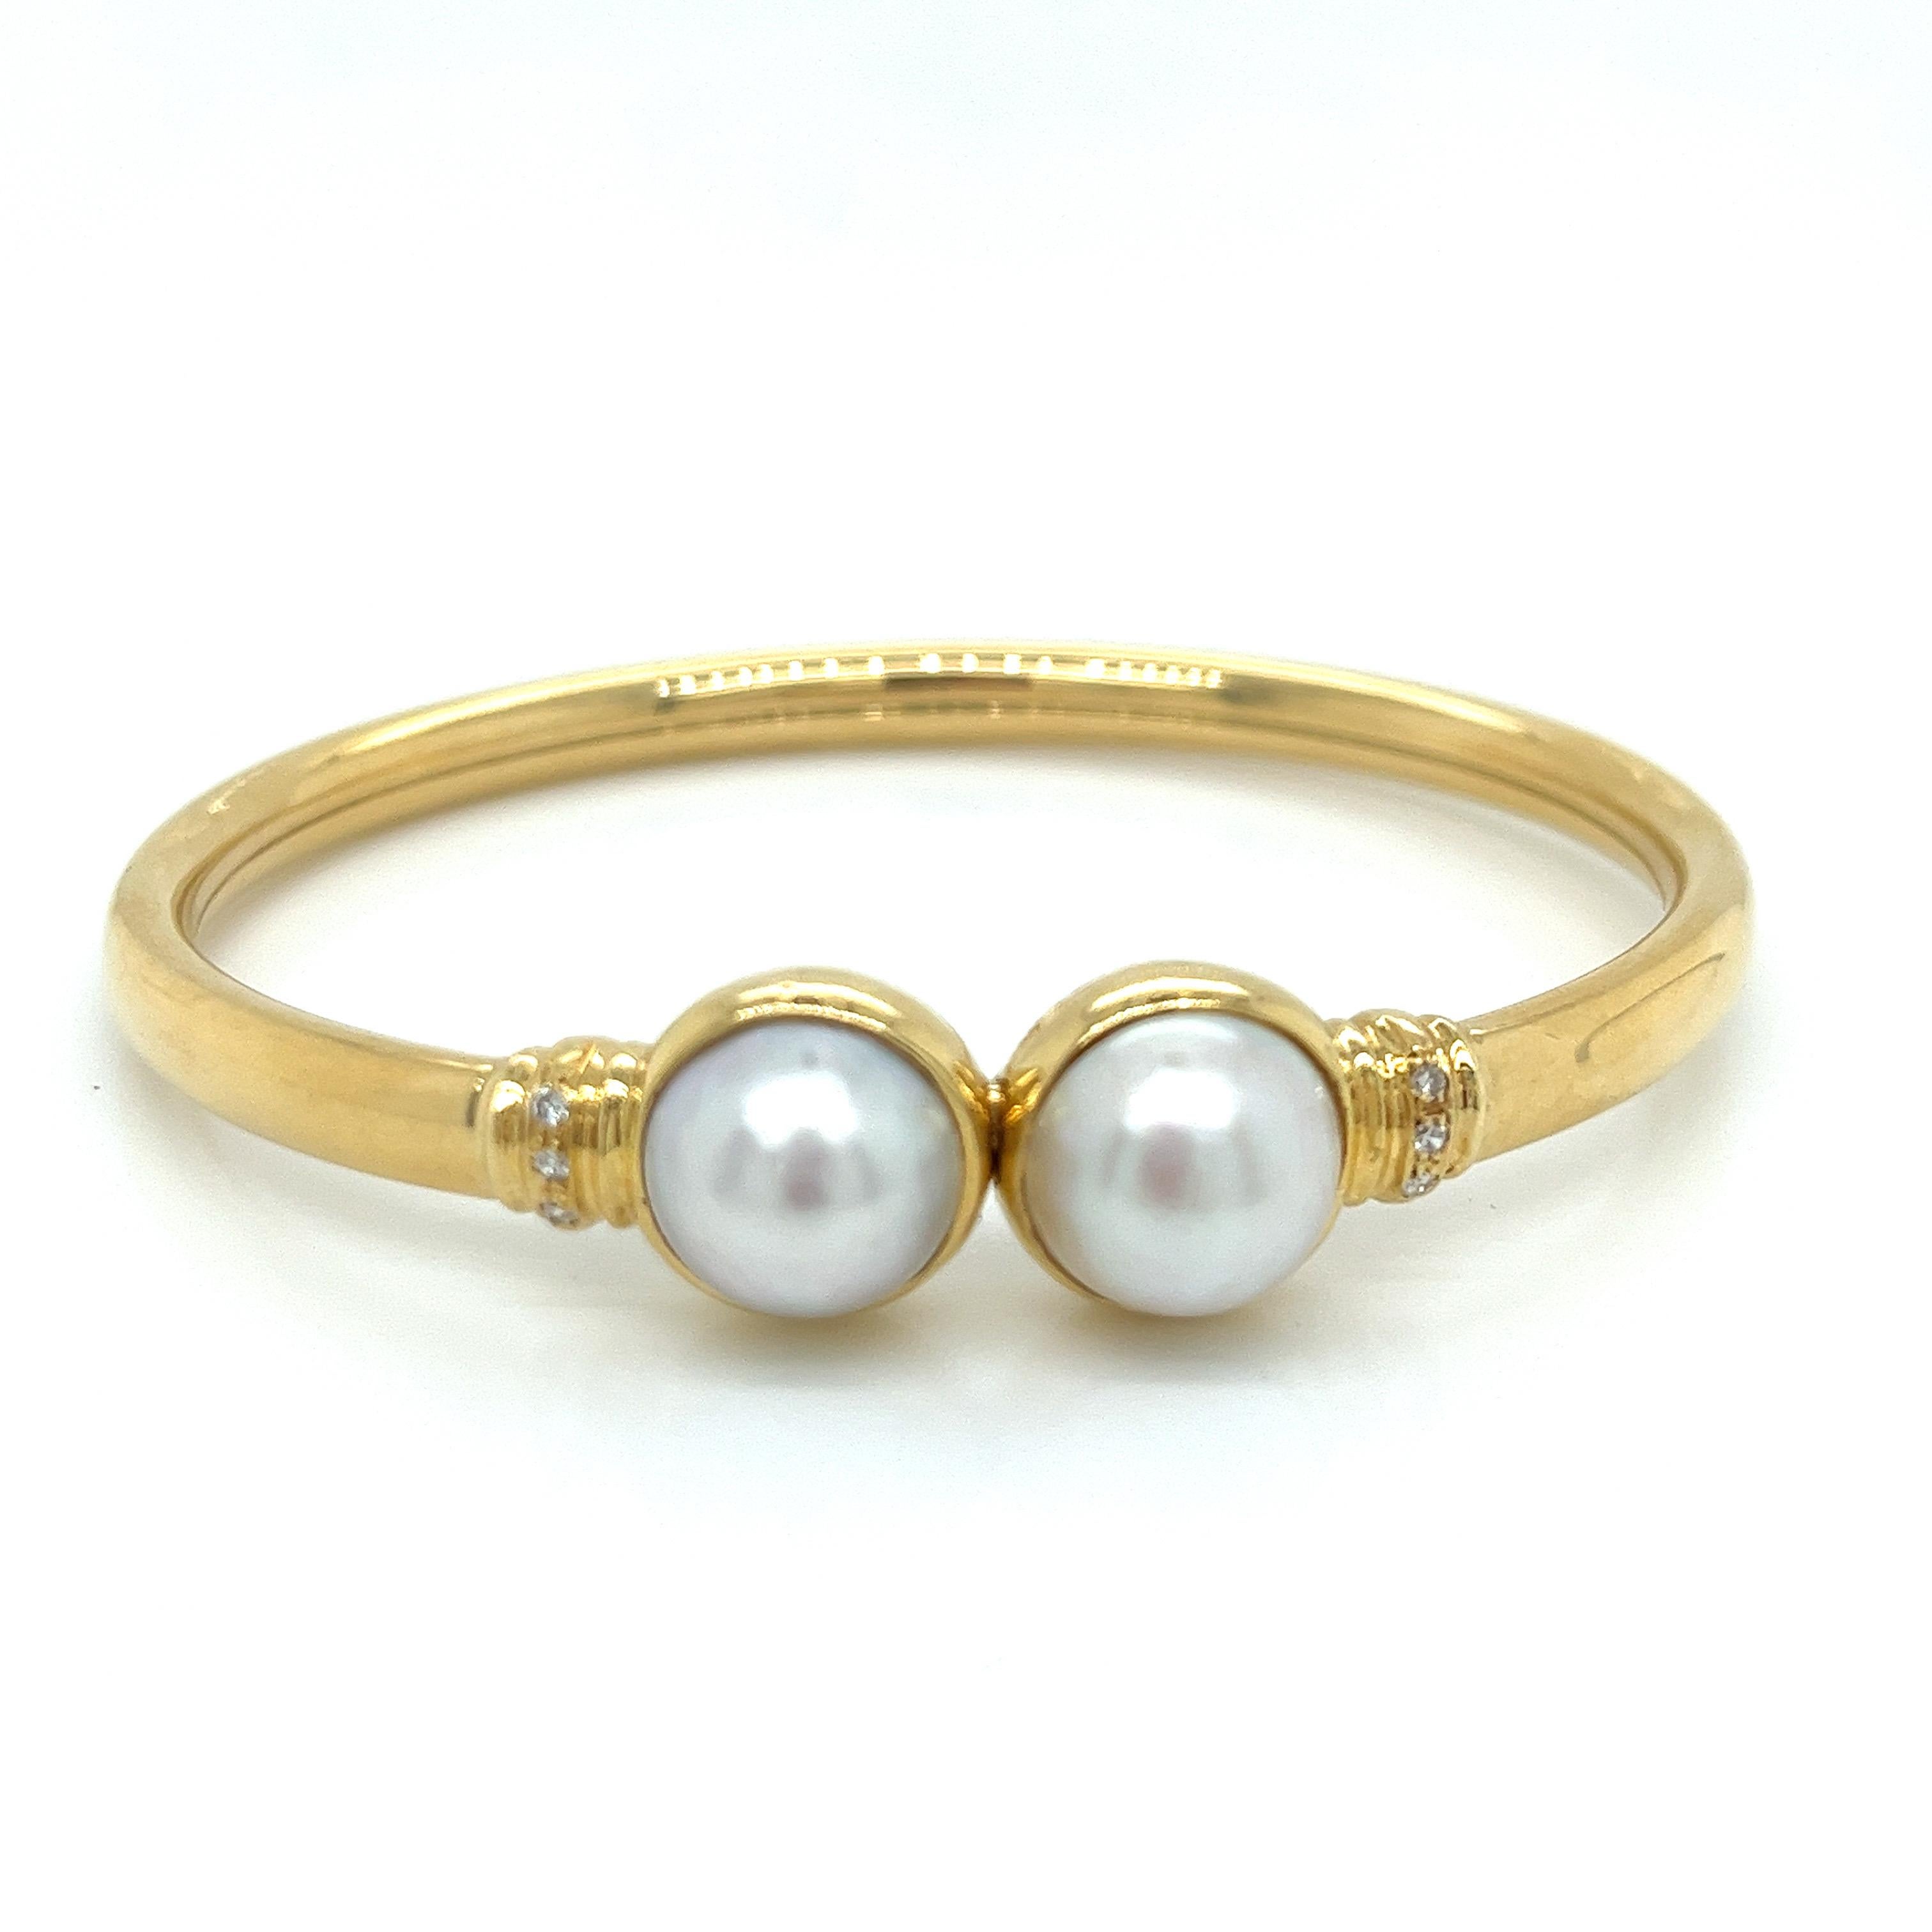 Vintage 18k Gelbgold Mabe Perle und Diamant-Armreif - Die beiden Mabe Perlen messen 10mm im Durchmesser. Sie sind in Lünetten gefasst, die sich zusammenklicken lassen. Der Armreif hat 6 runde Diamanten mit einem Gewicht von ca. 0,06 ct als Akzent.